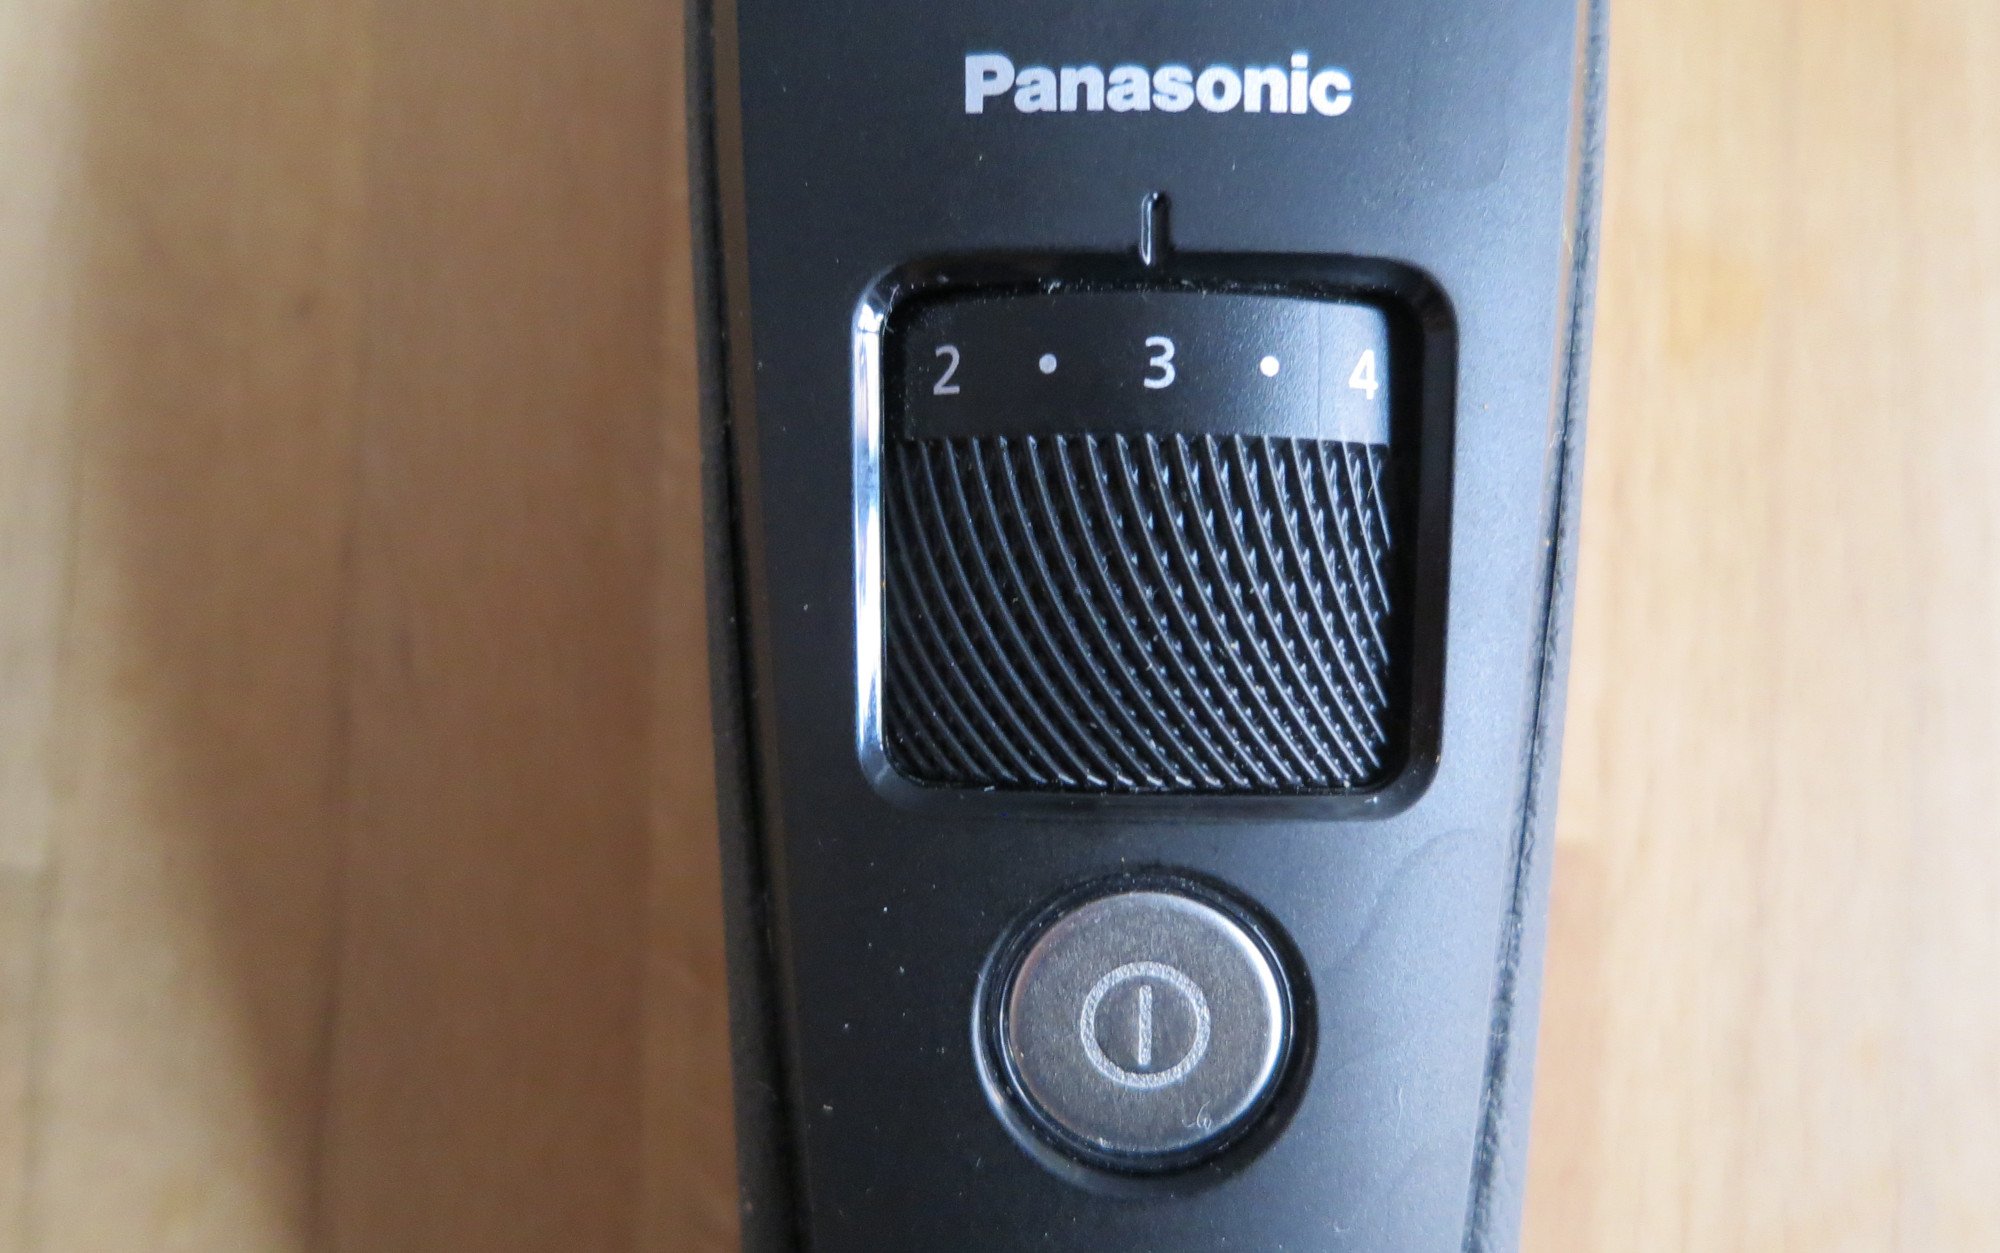 Das Drehrad zur Längeneinstellung am Panasonic ER-SB40 in sehr präzise (Bild: Peter Giesecke)